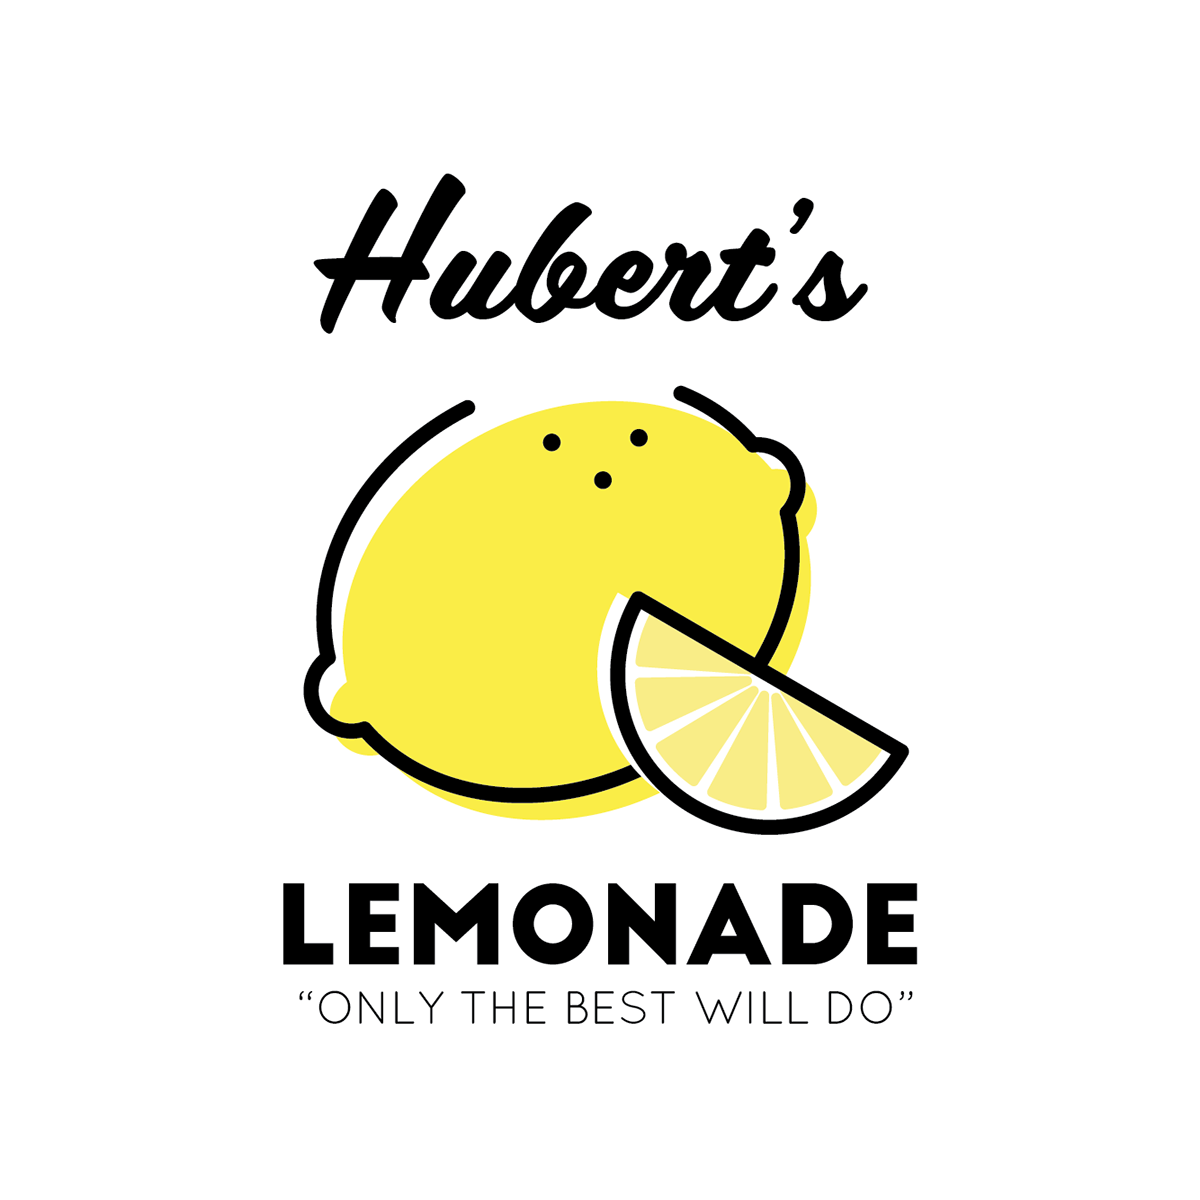 lemonade logo ideas 3